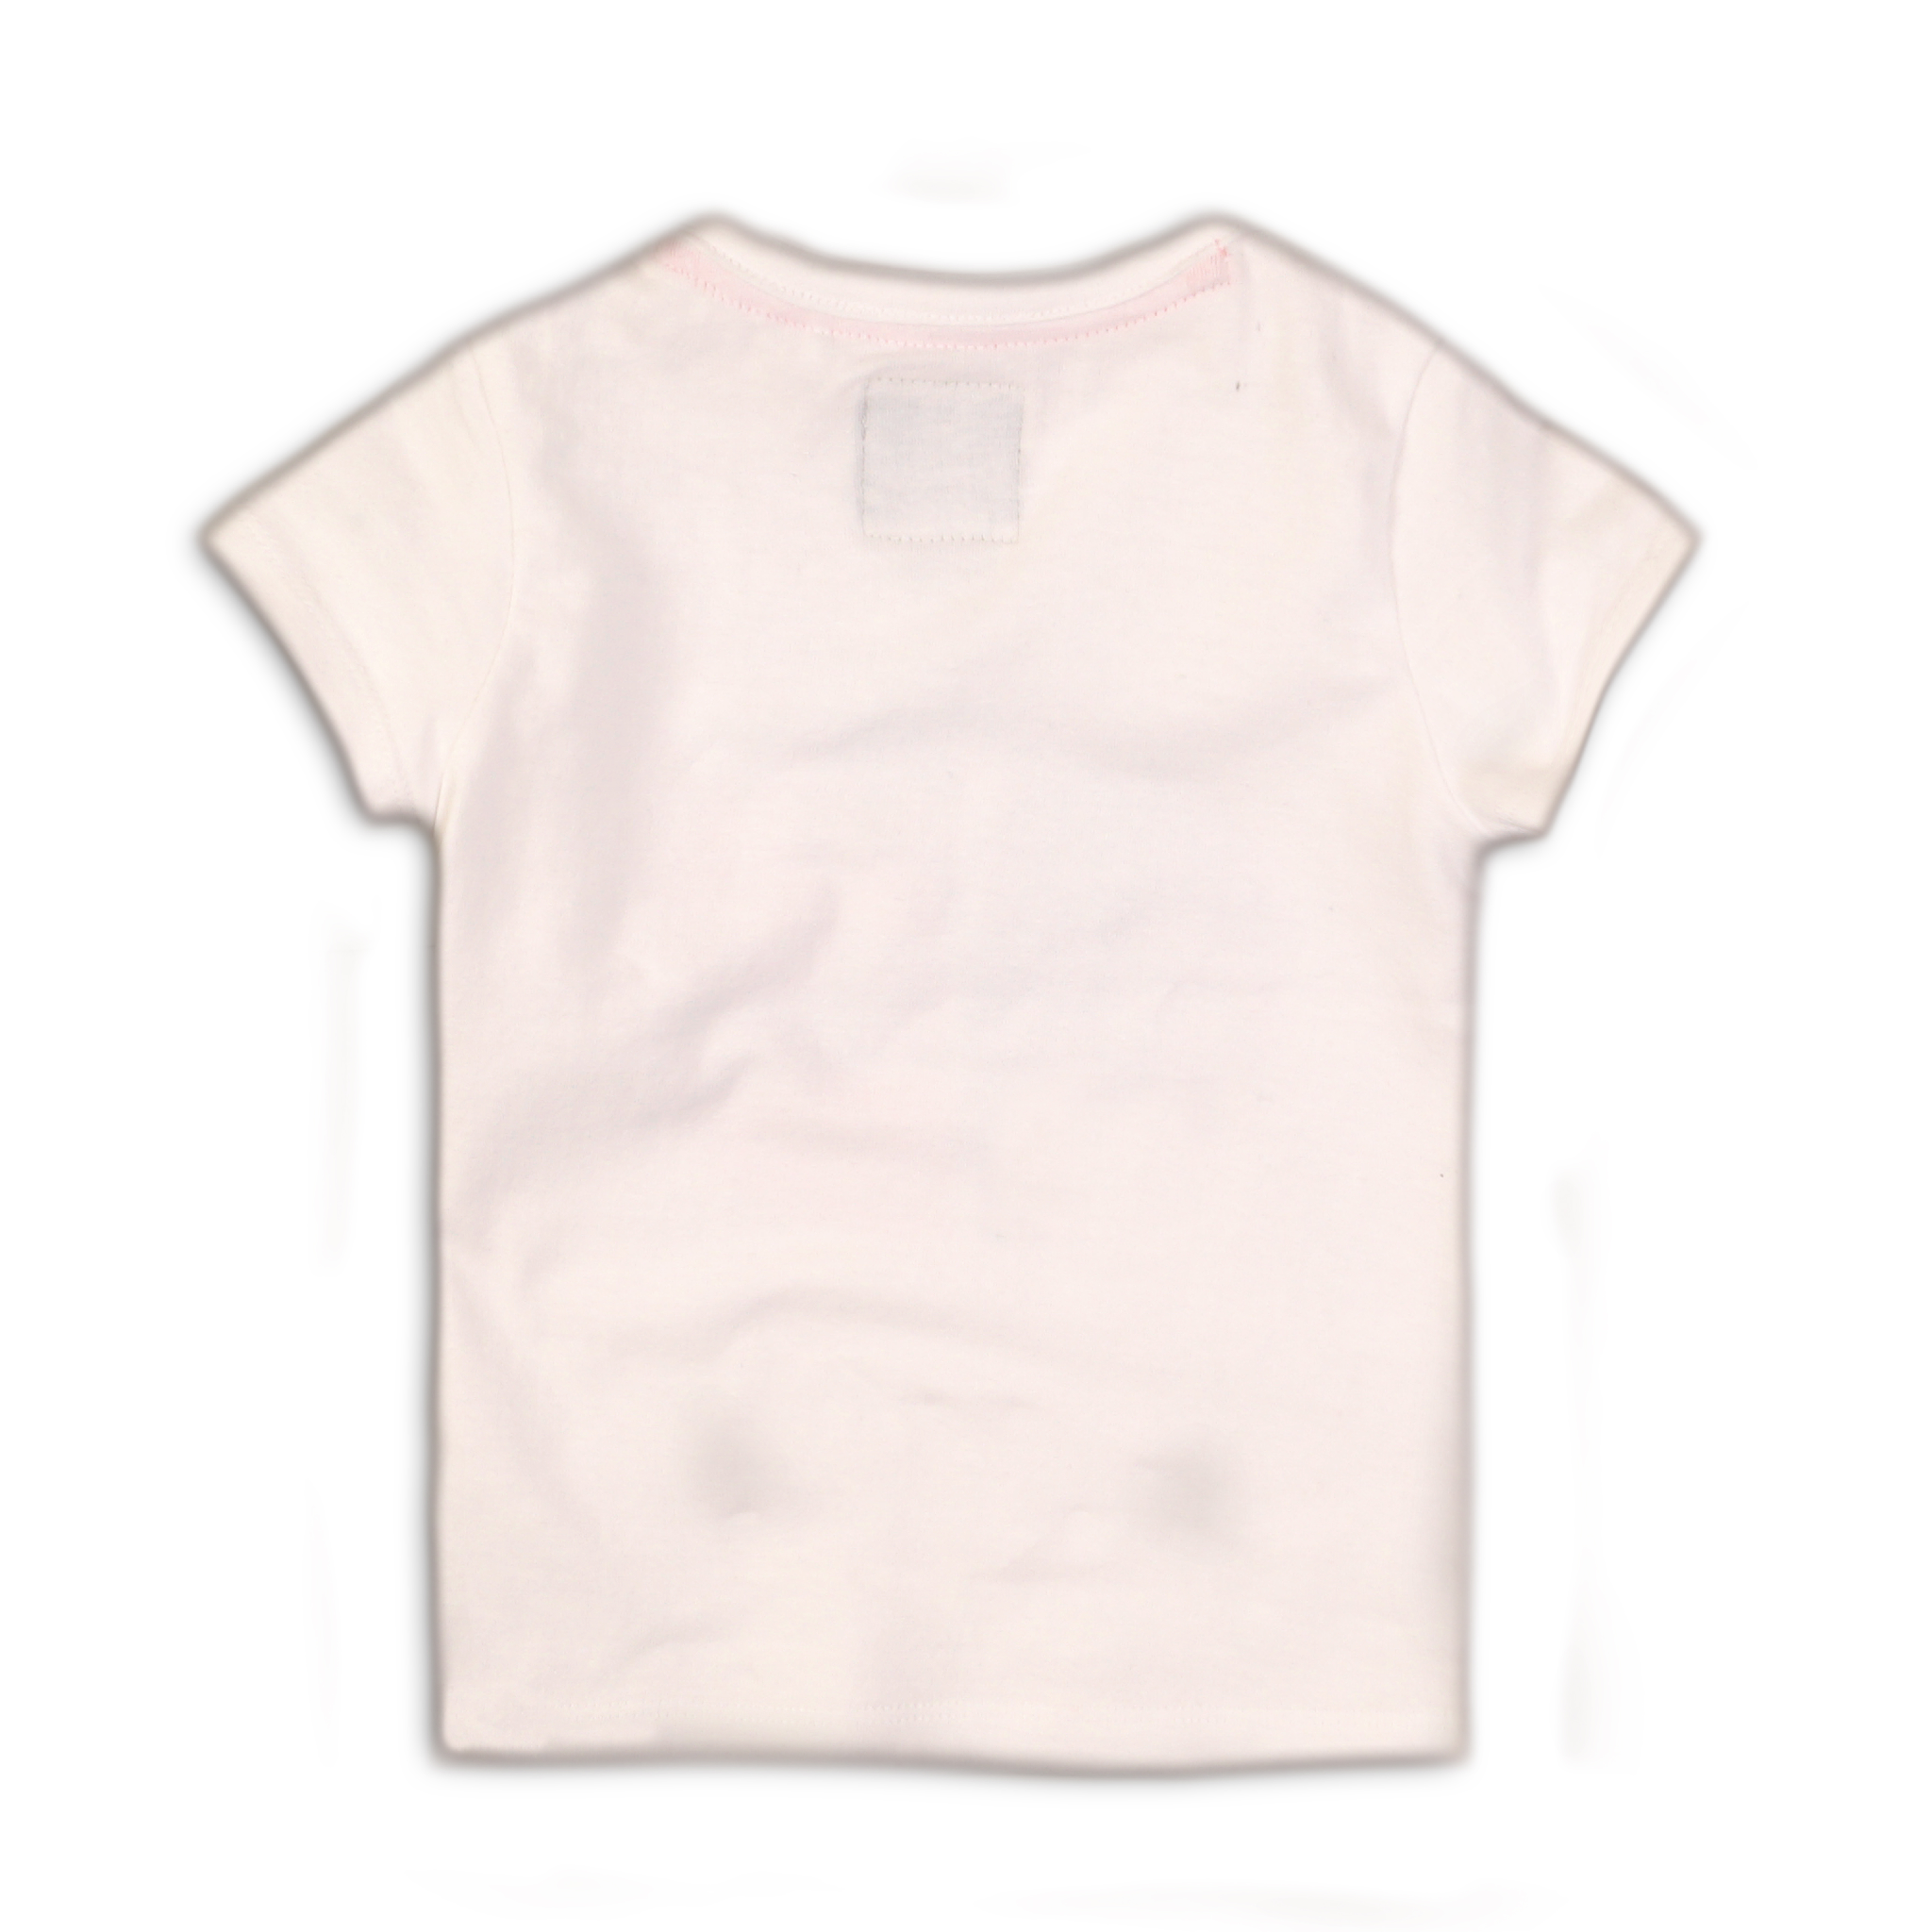 Baby Jongens Baby t-shirt van Koko Noko in de kleur black with white dots in maat 86.